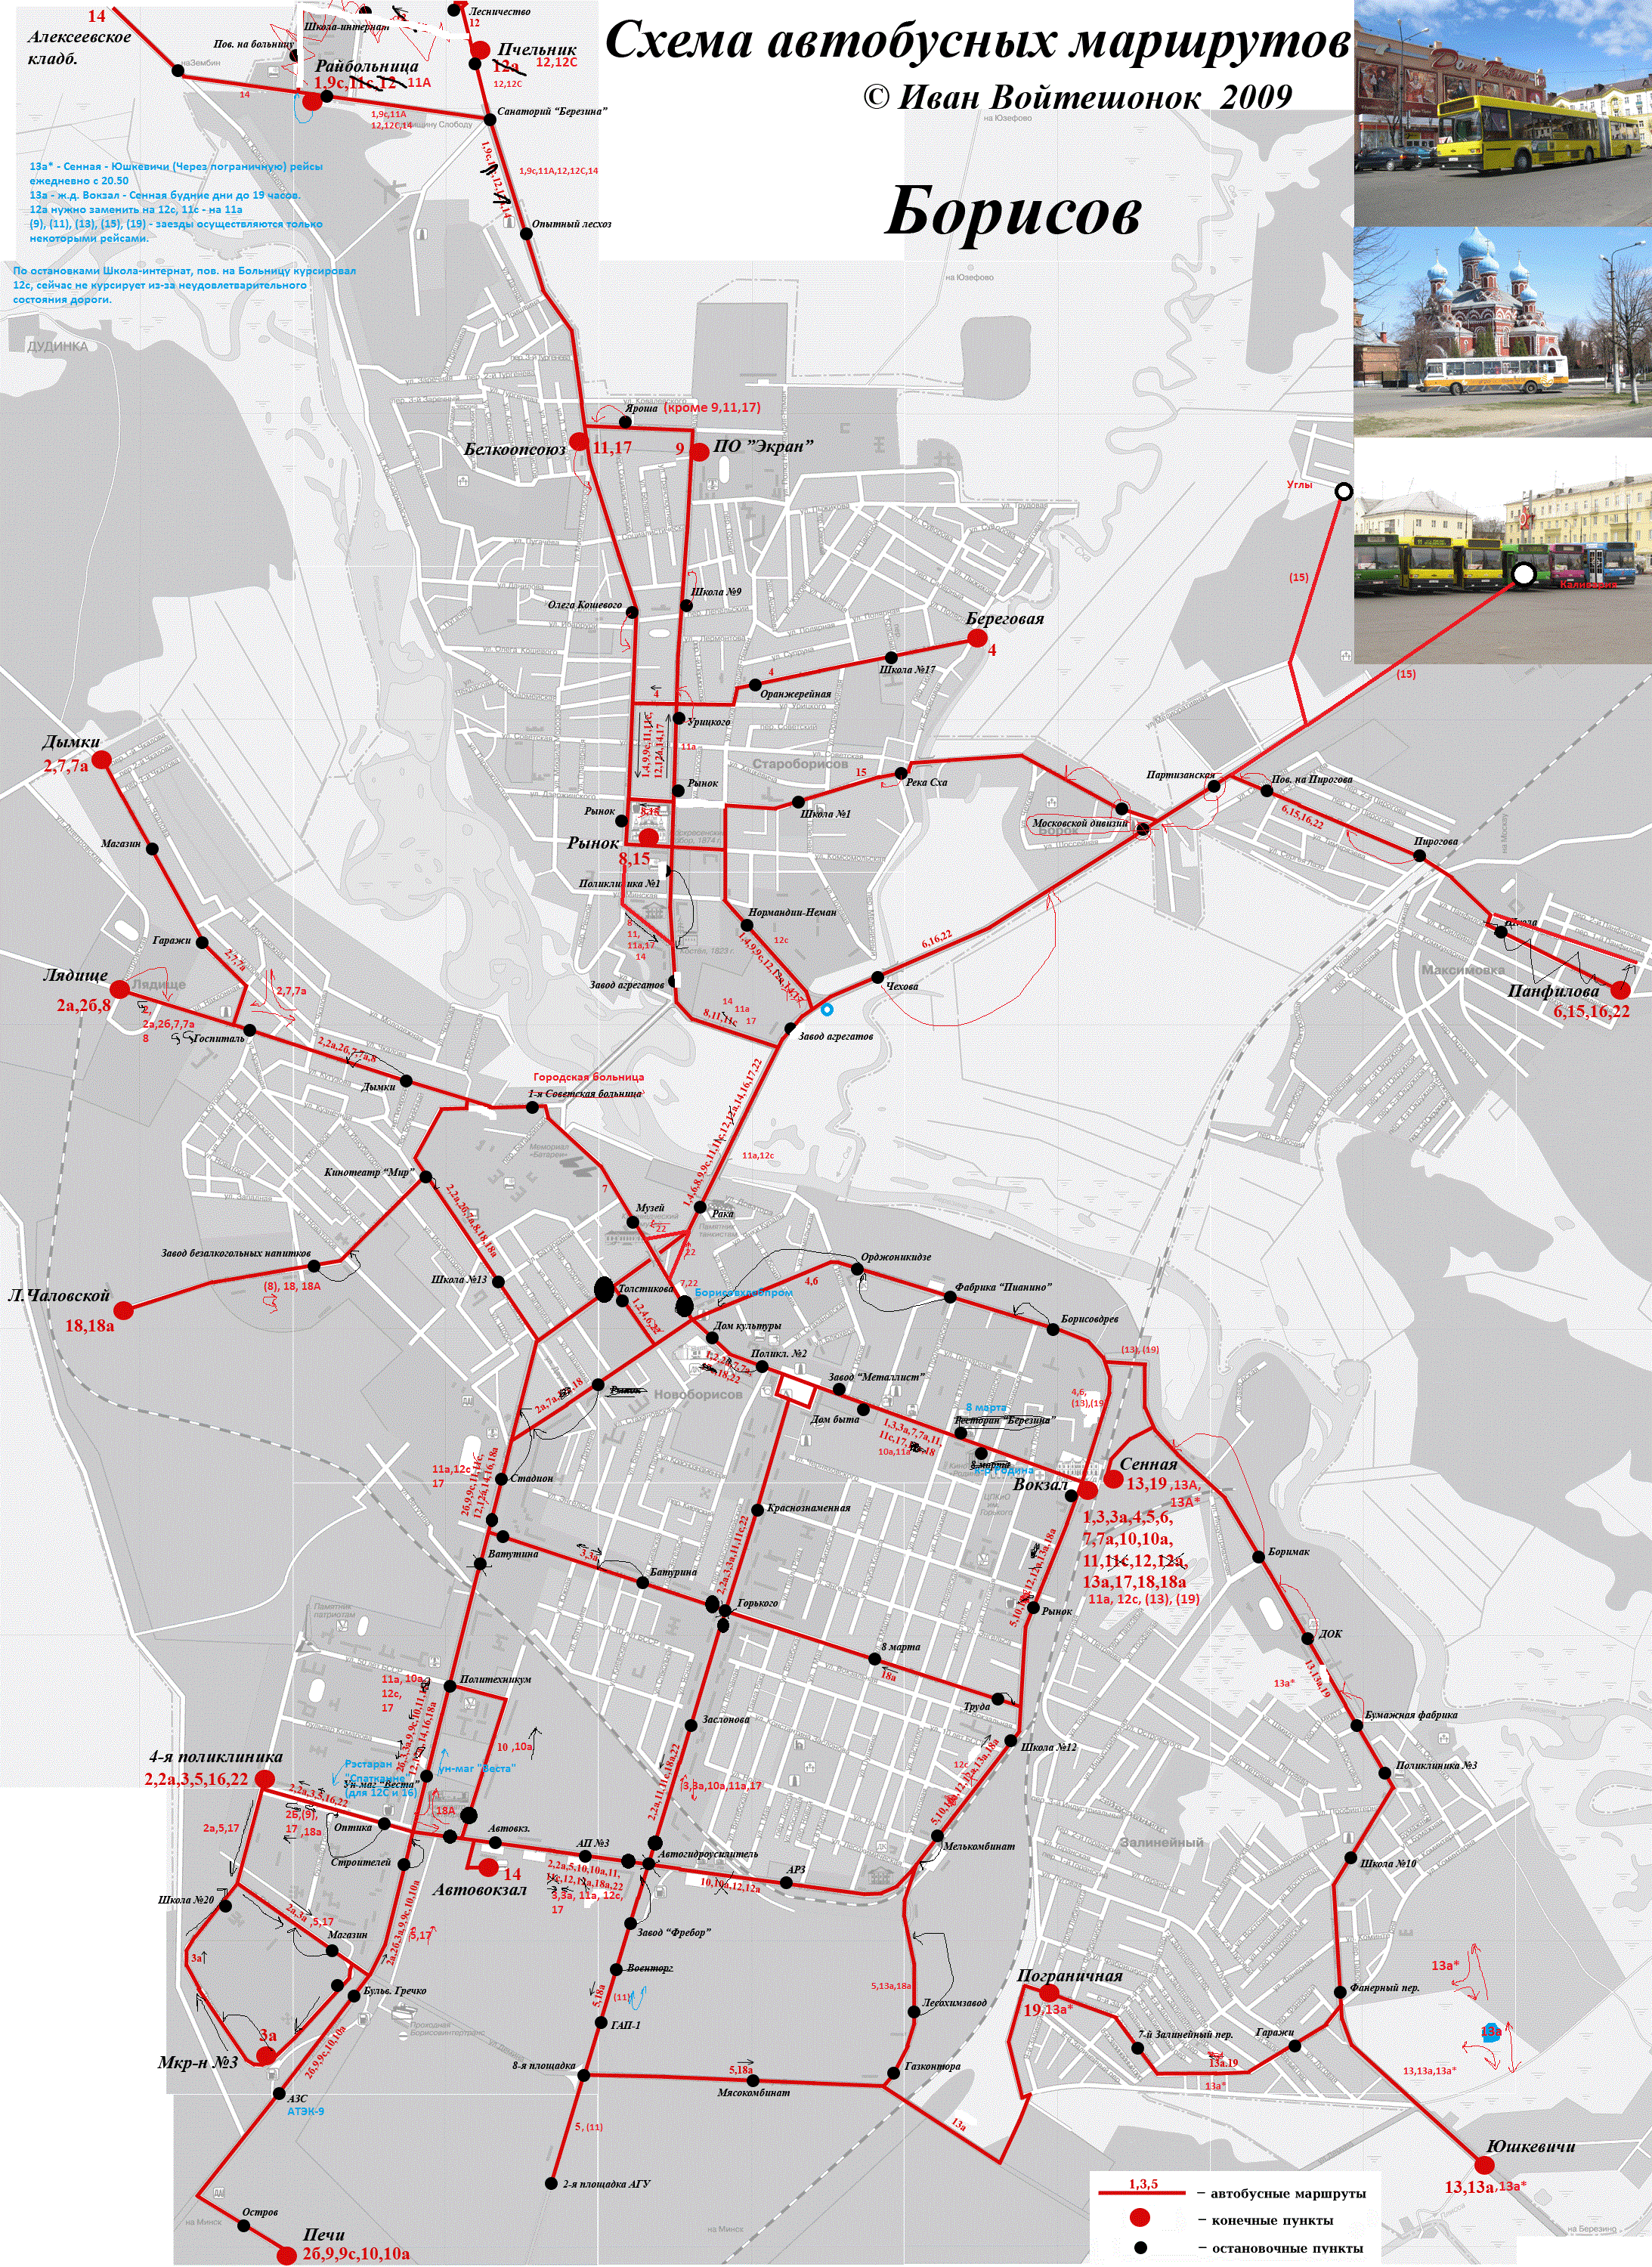 Городской транспортный маршрут. Схемы маршрутов городского транспорта. Карта маршрутов городского транспорта. Схема городских автобусных маршрутов. Карта движения автобусов.